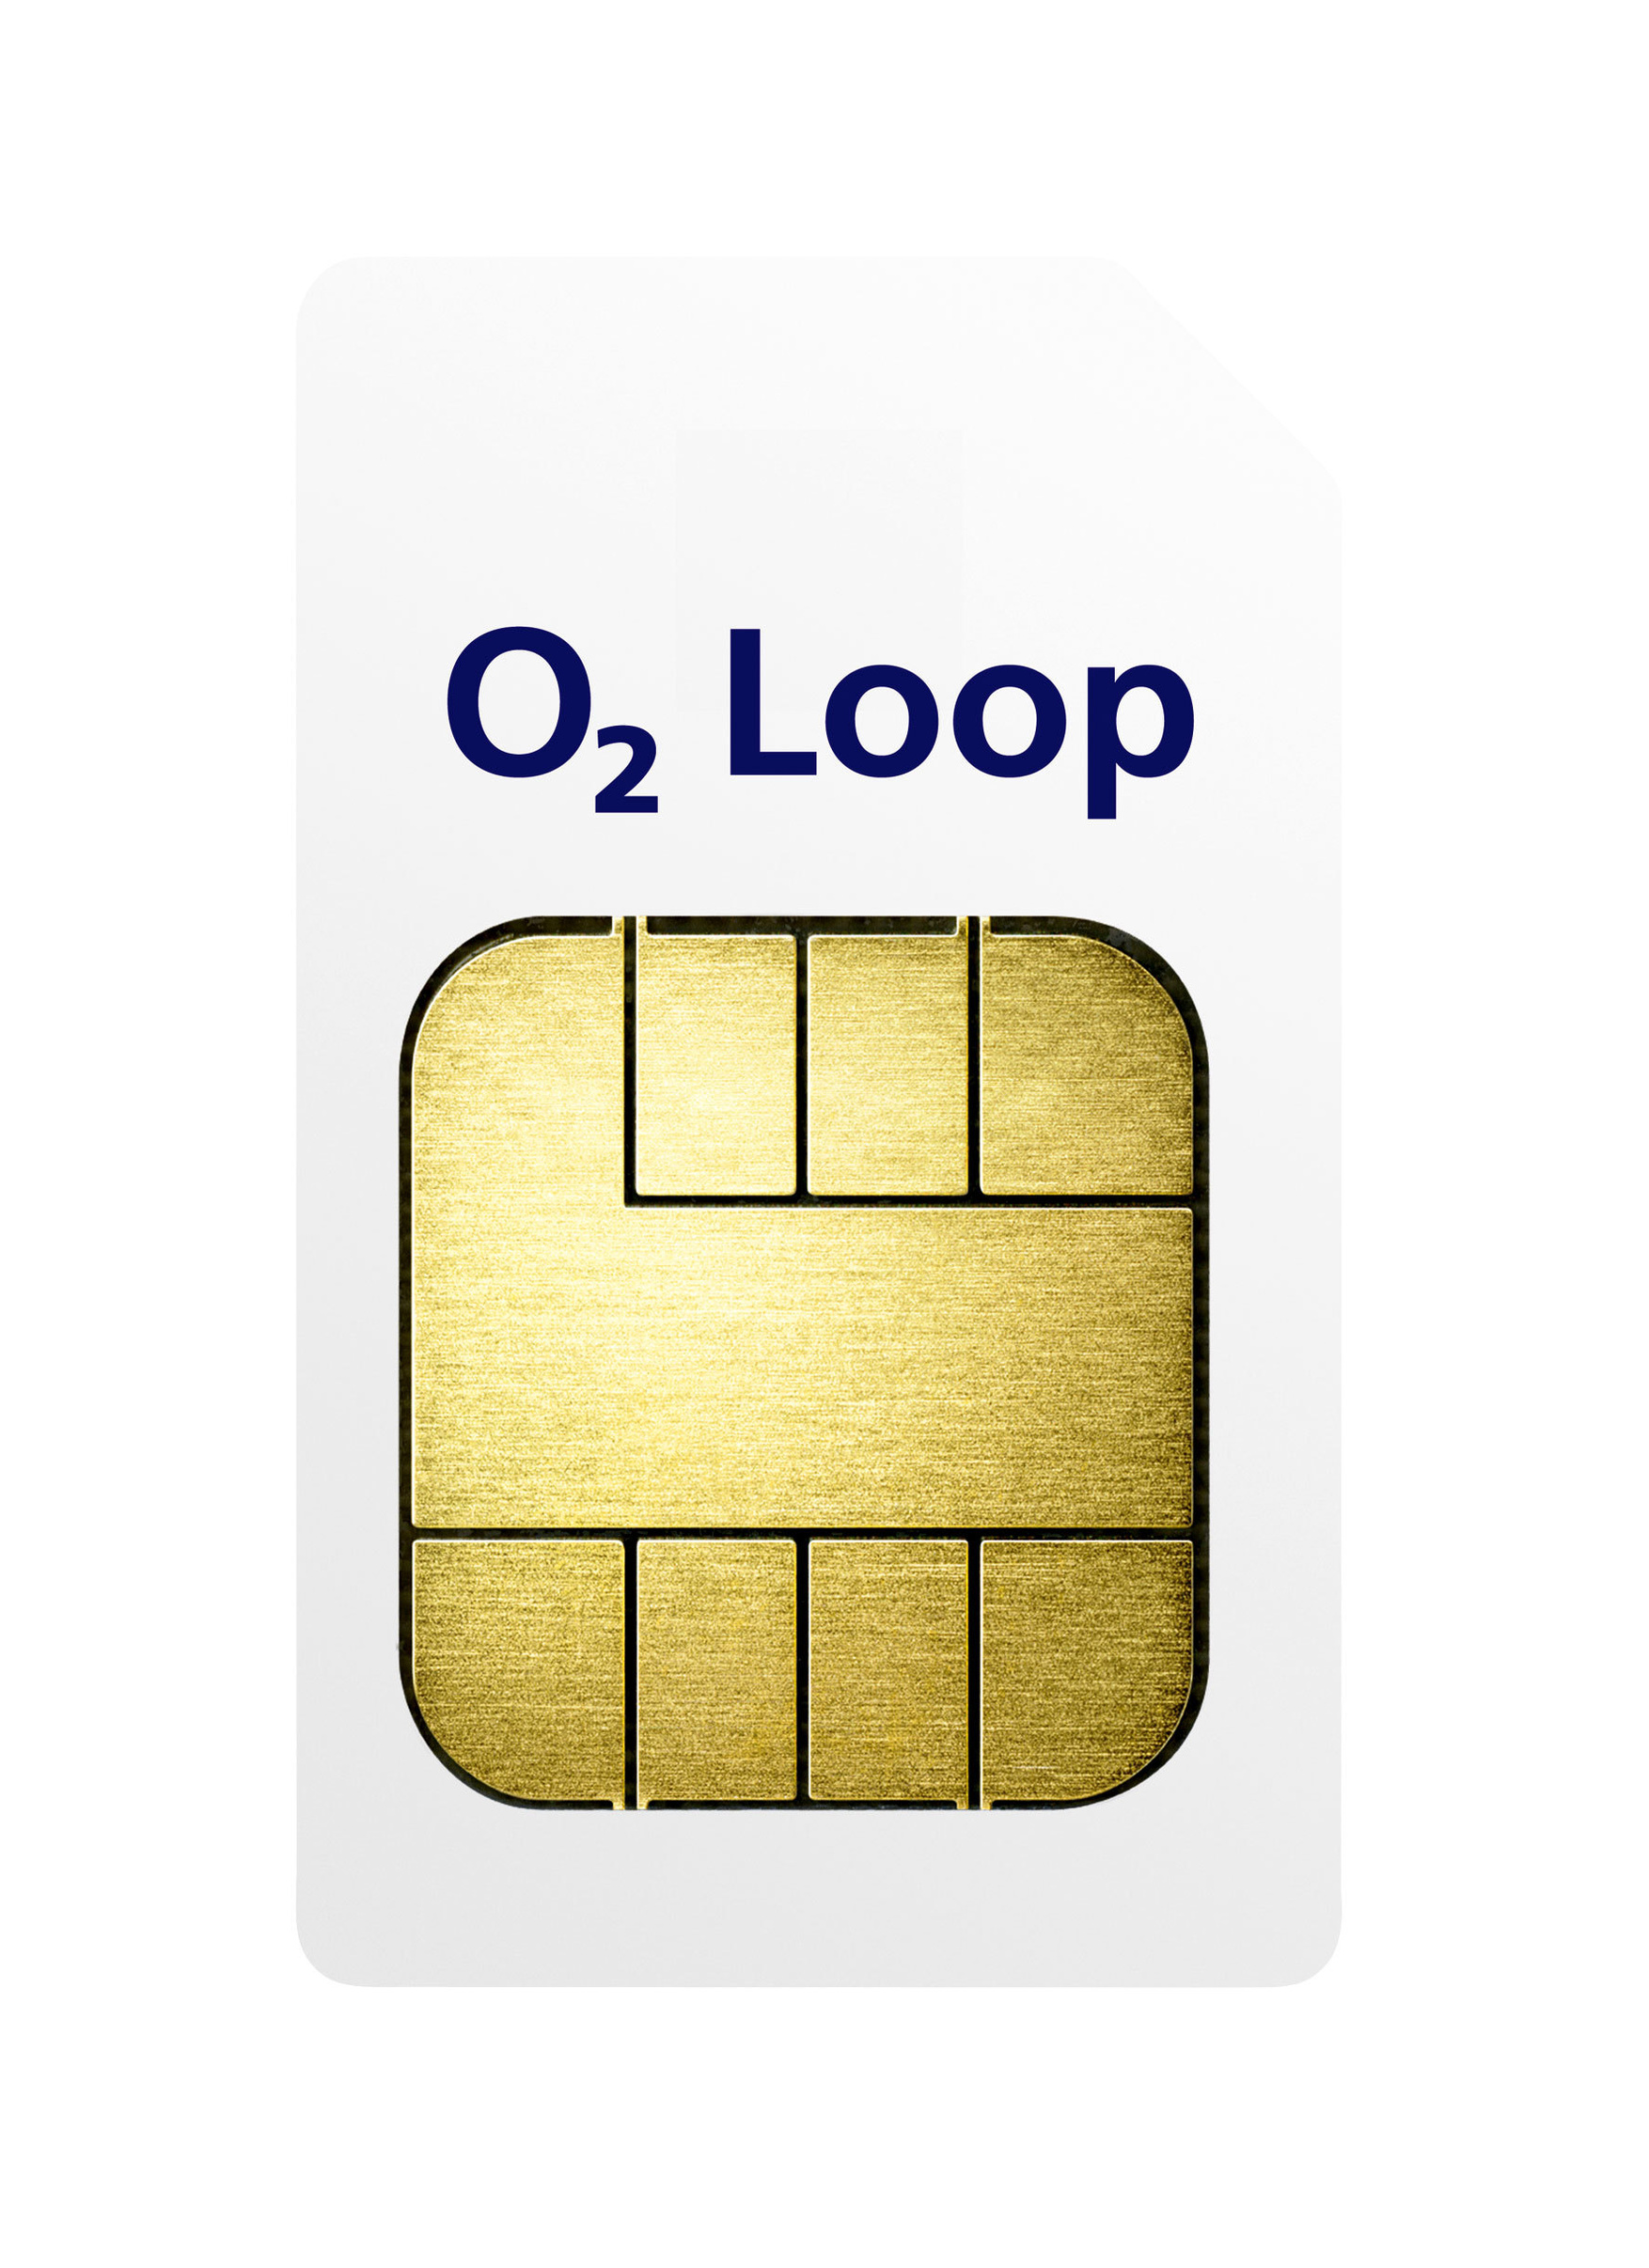 O2 Loop Prepaid Karte, inklusive 5 € Startguthaben